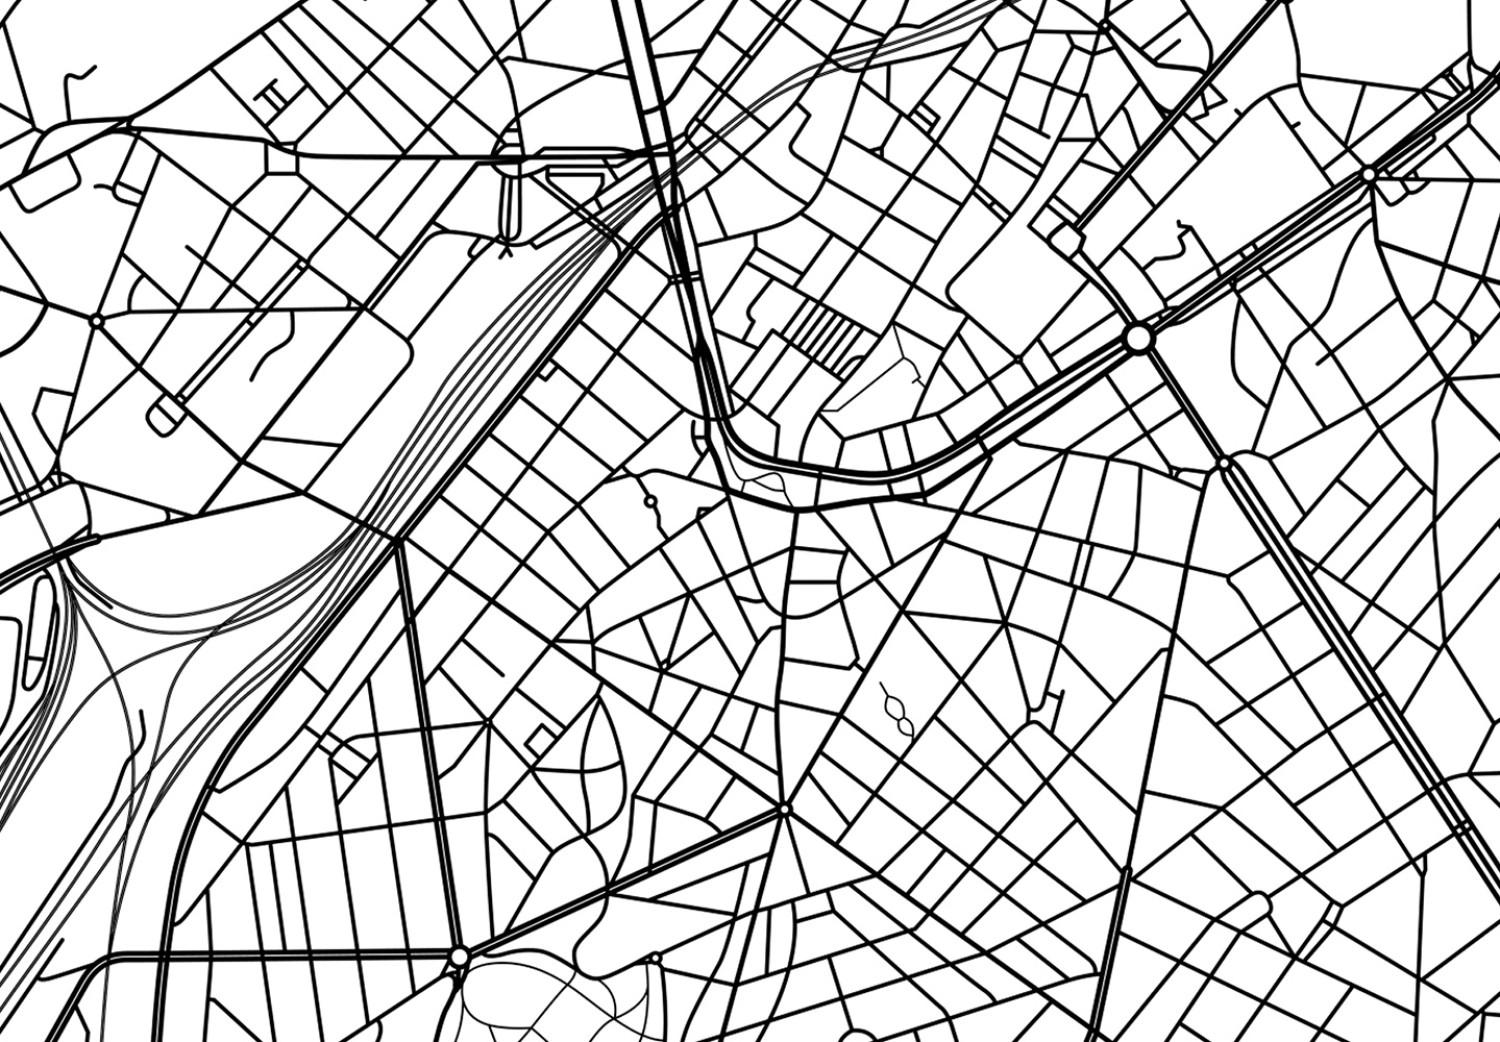 Cuadro Calles de Bruselas - mapa lineal en blanco y negro de la ciudad belga